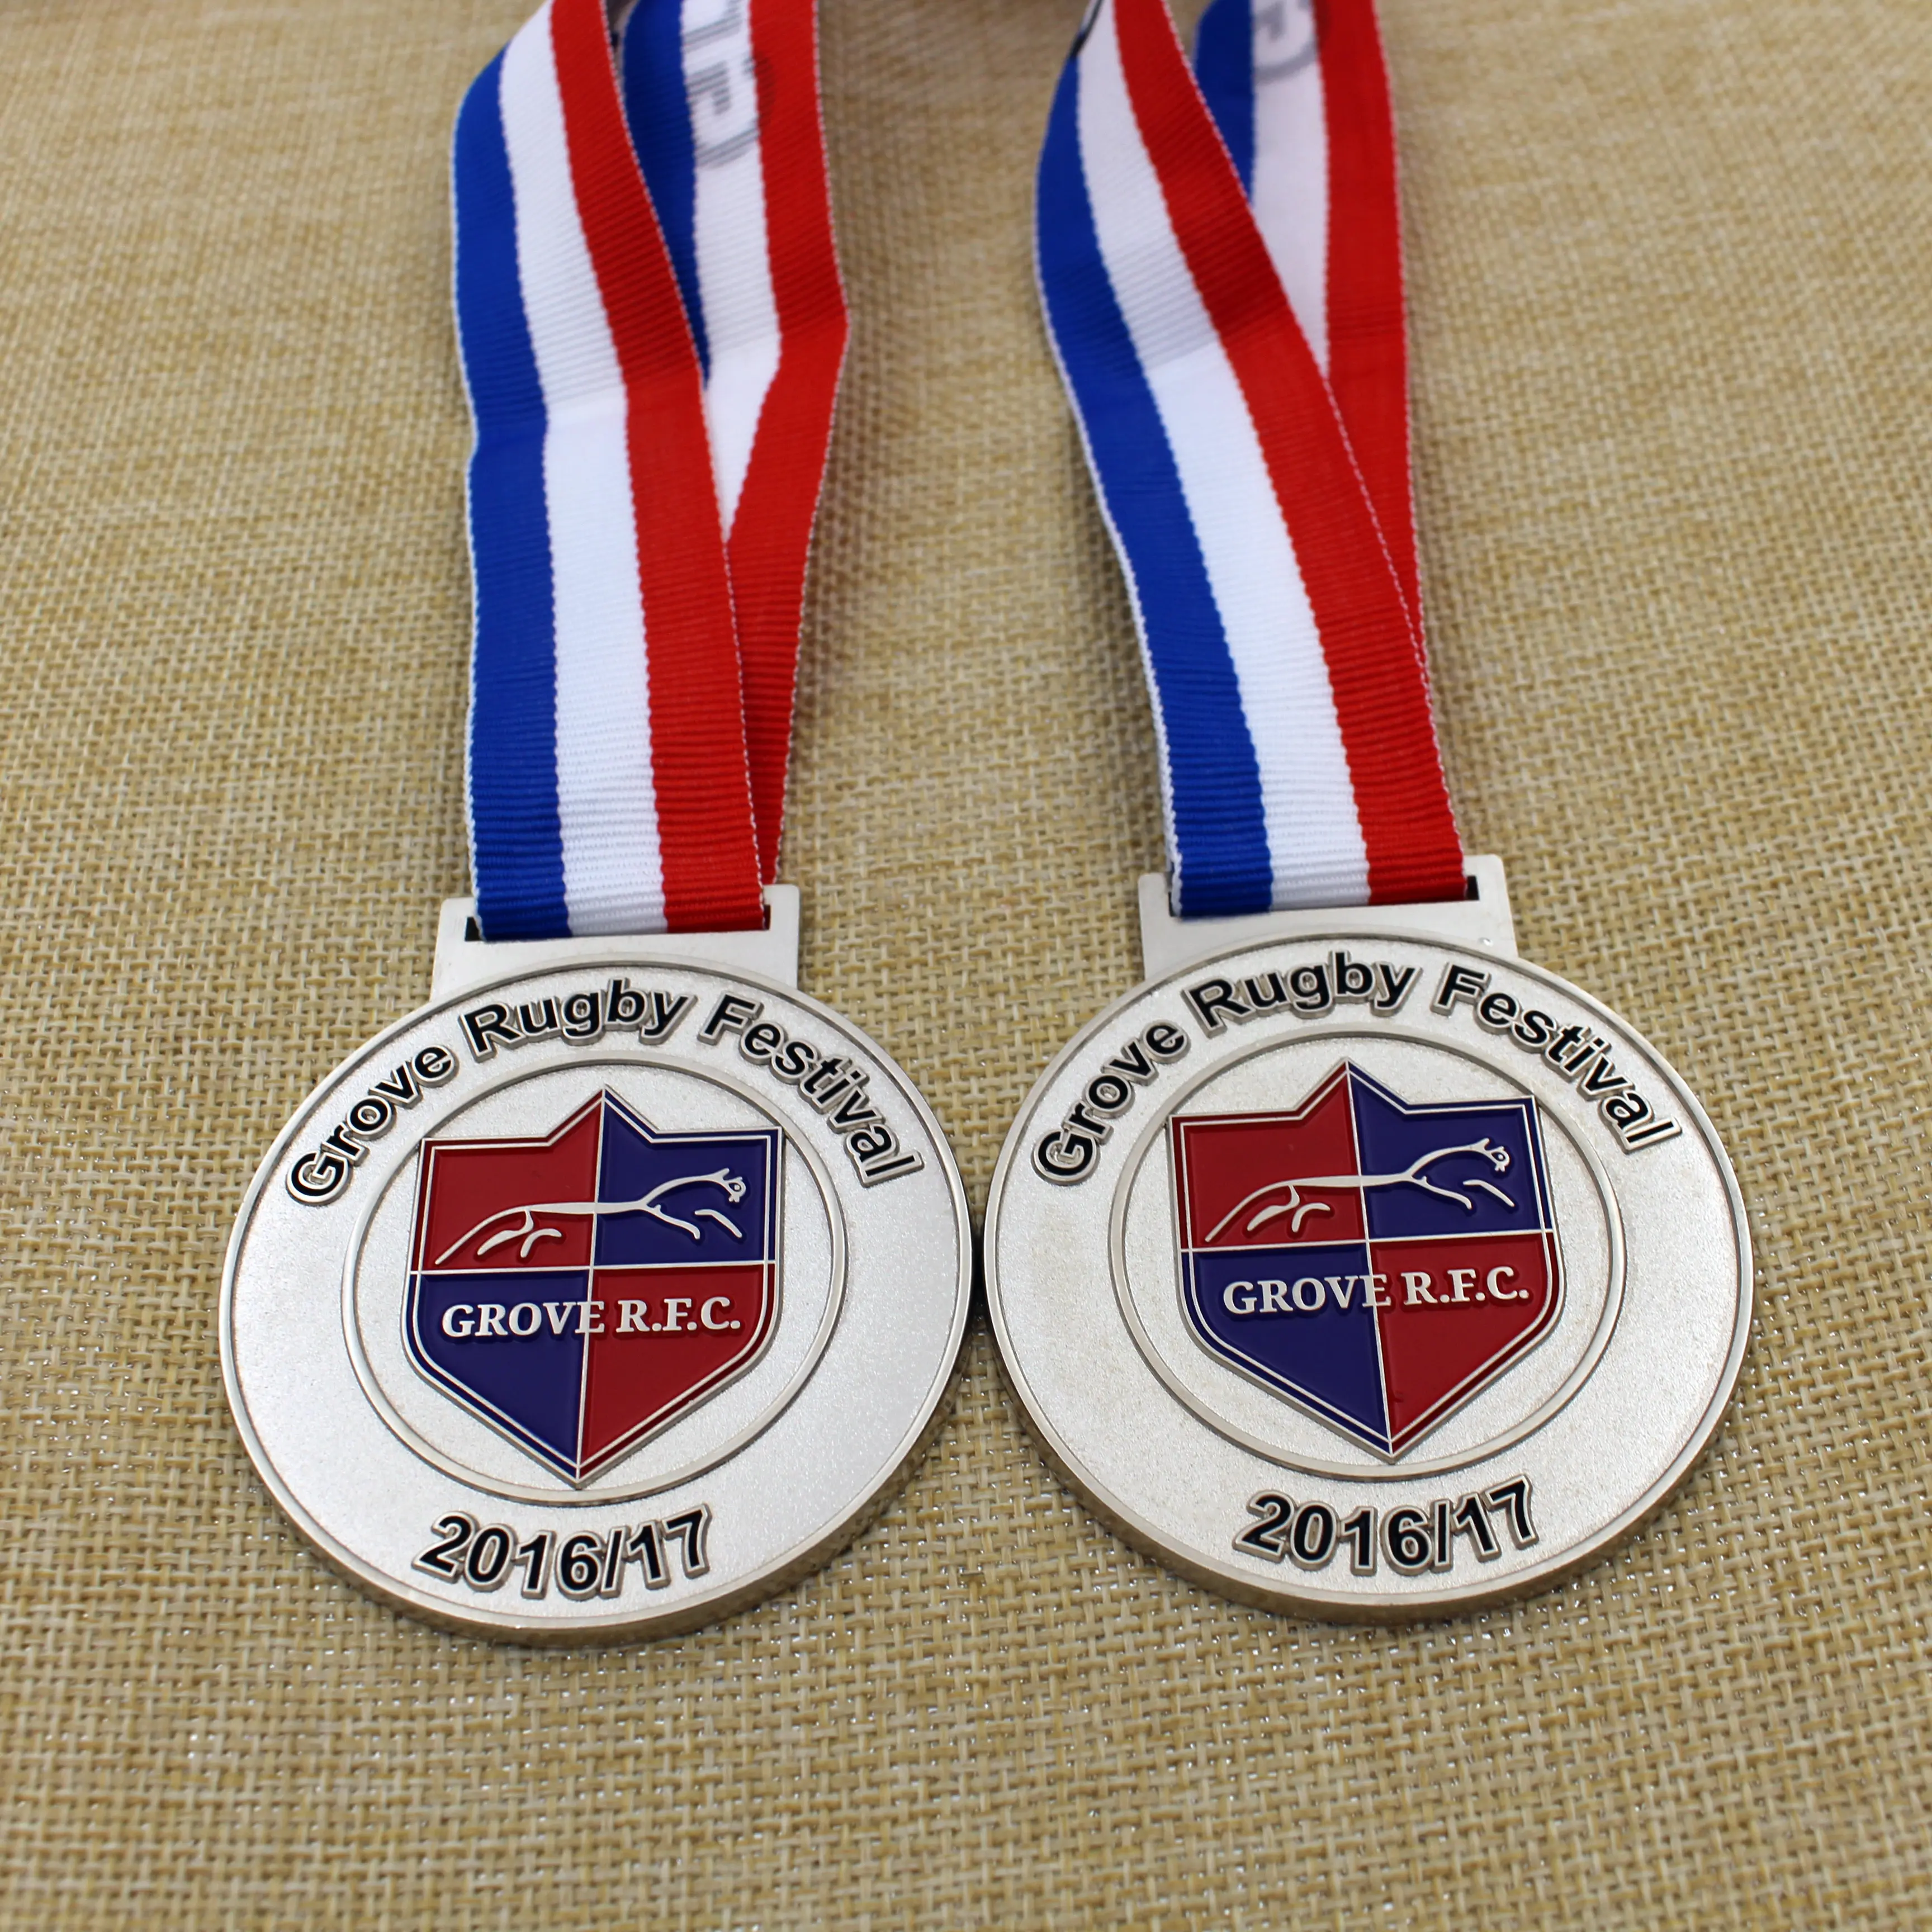 Fabricación de gimnasia, natación, Rugby, medalla de fútbol, aleación de Zinc en blanco personalizada, Premio de Oro 3D, Medalla deportiva de Metal